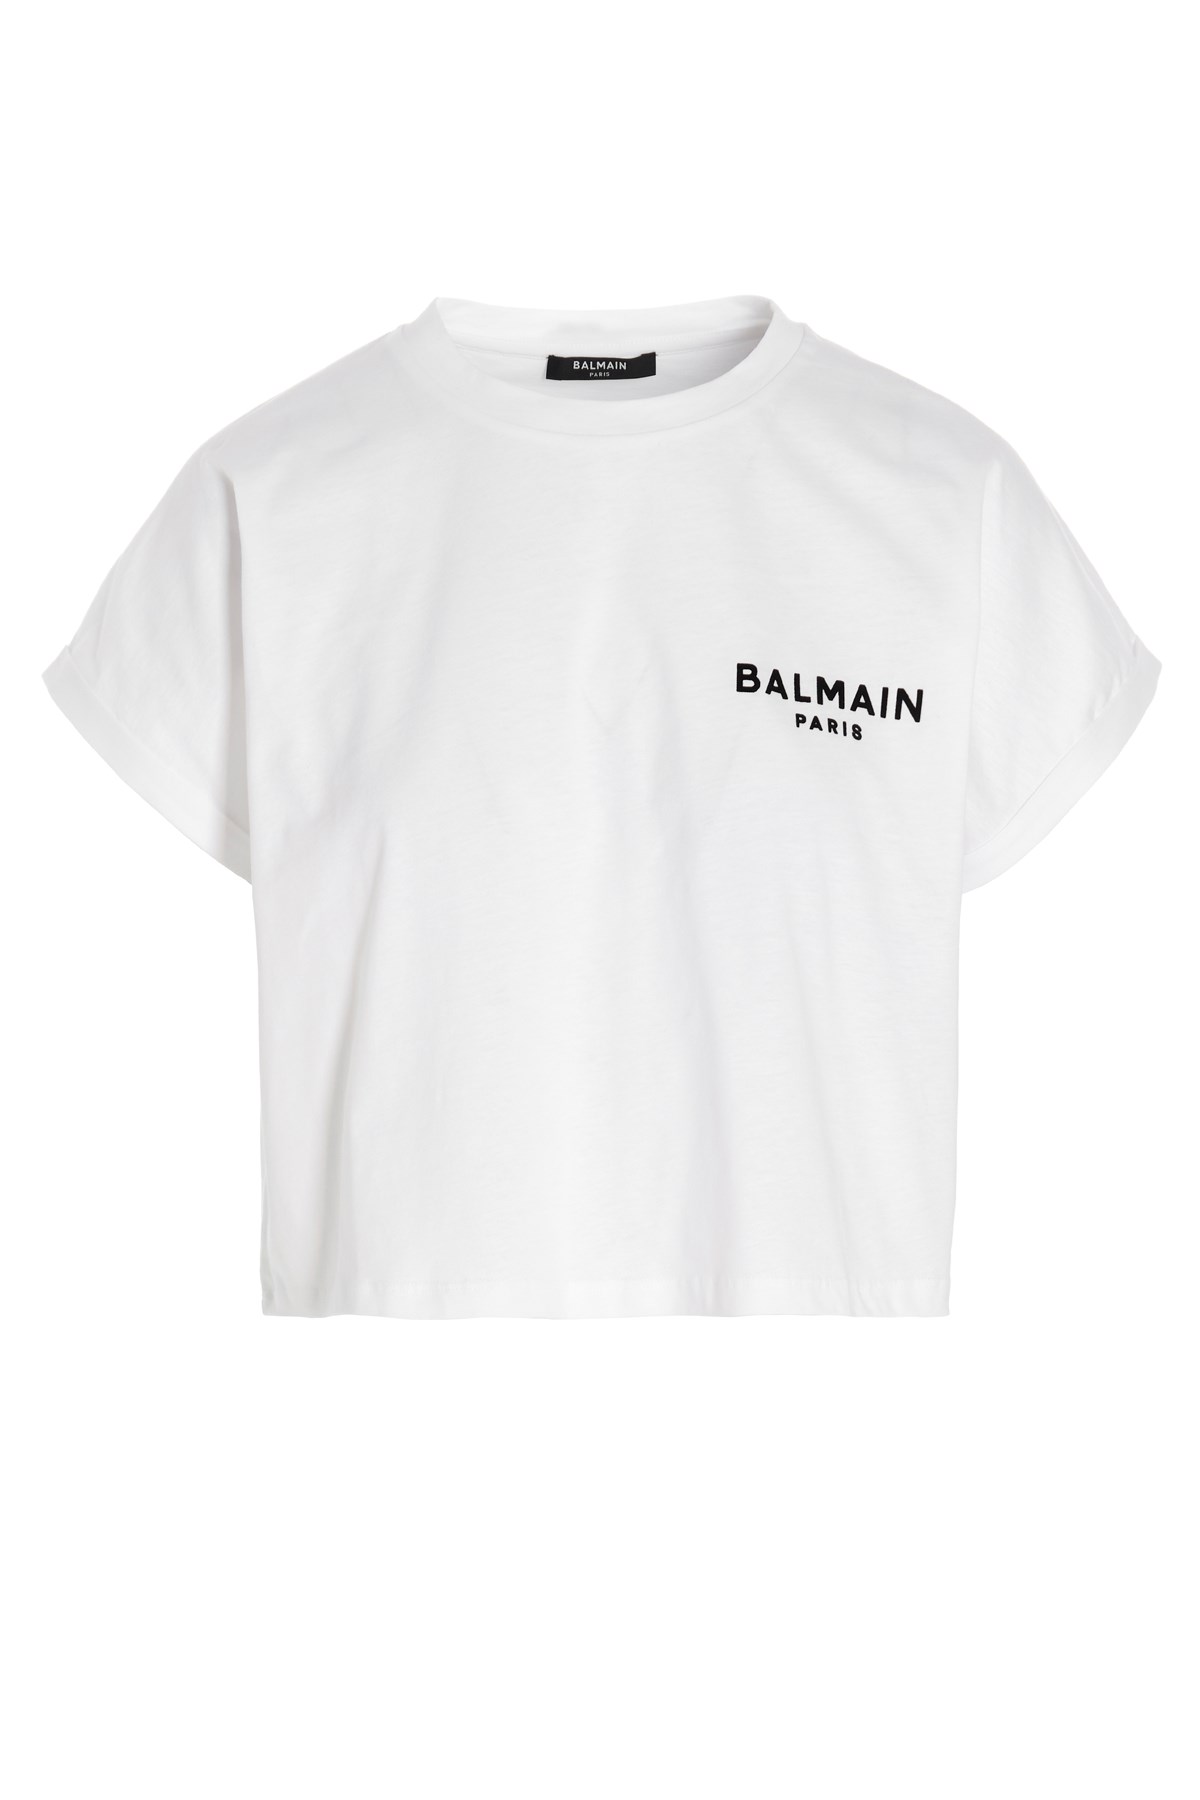 BALMAIN T-Shirt Mit Logo Im Flocking